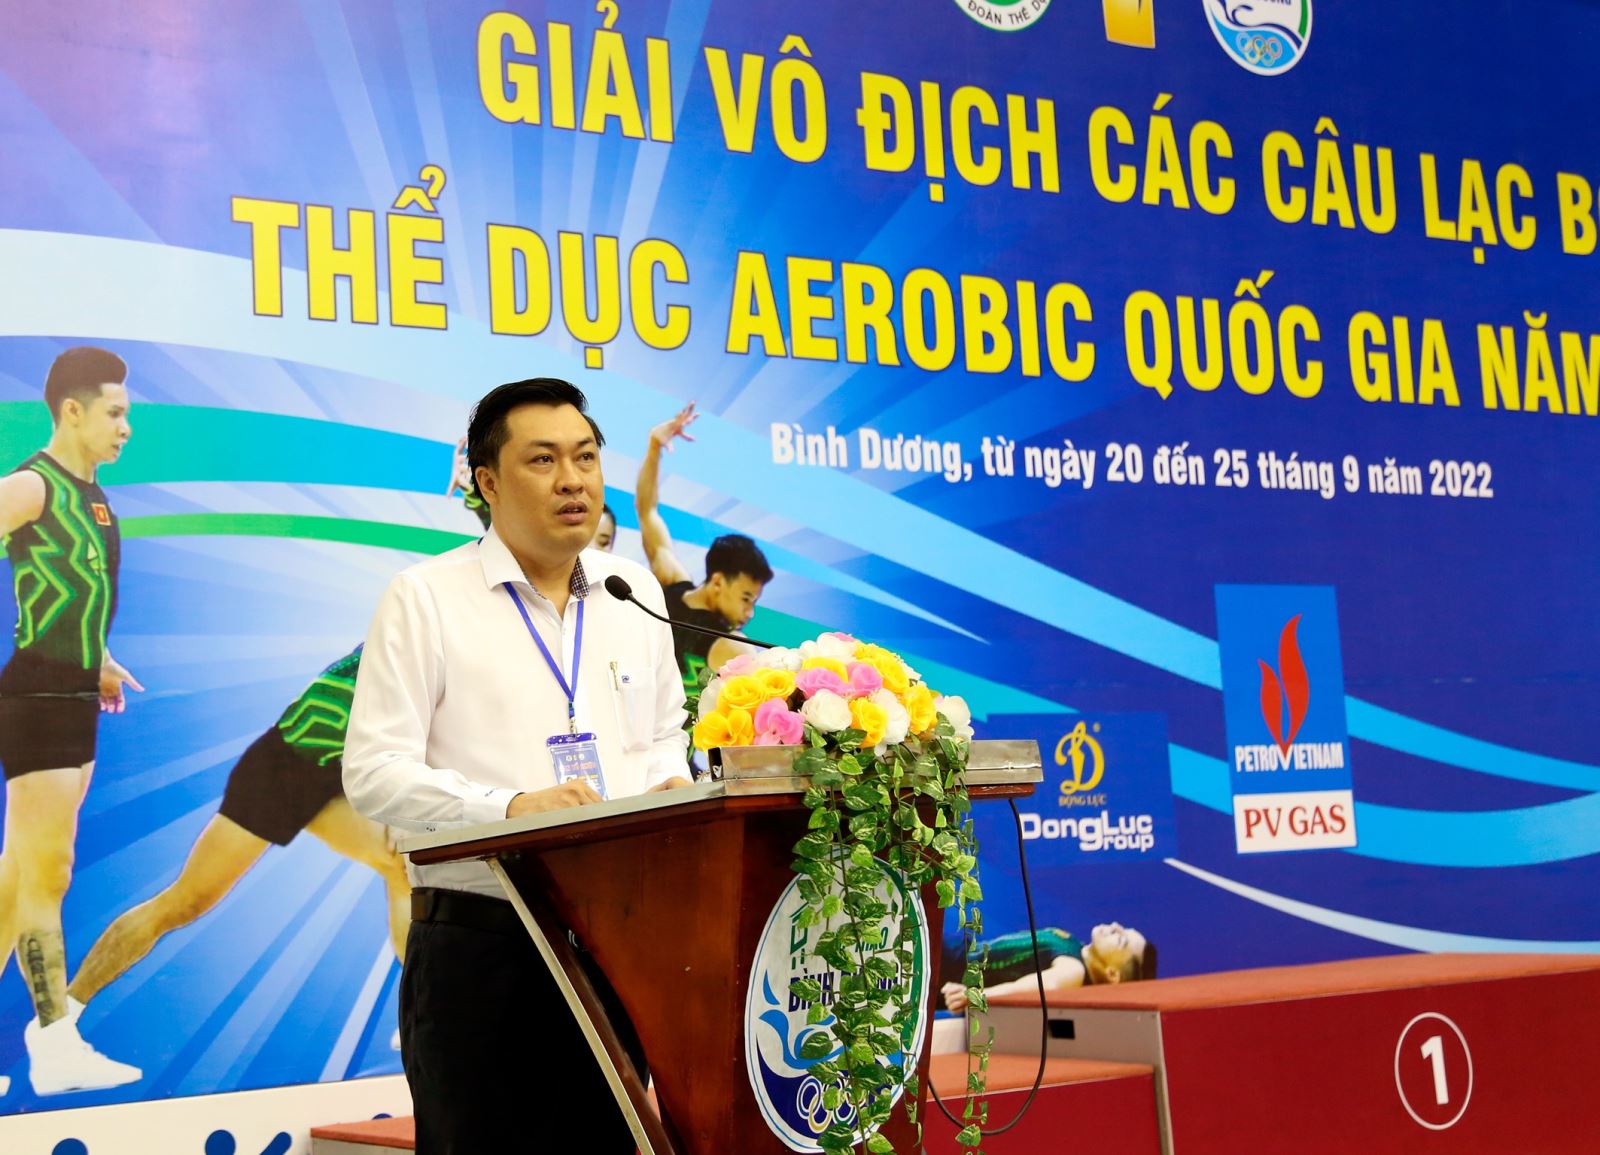 Ông Cao Văn Chóng - PGĐ Sở Văn hóa, Thể thao và Du lịch tỉnh Bình Dương – Trưởng Ban Tổ chức giải phát biểu khai mạc